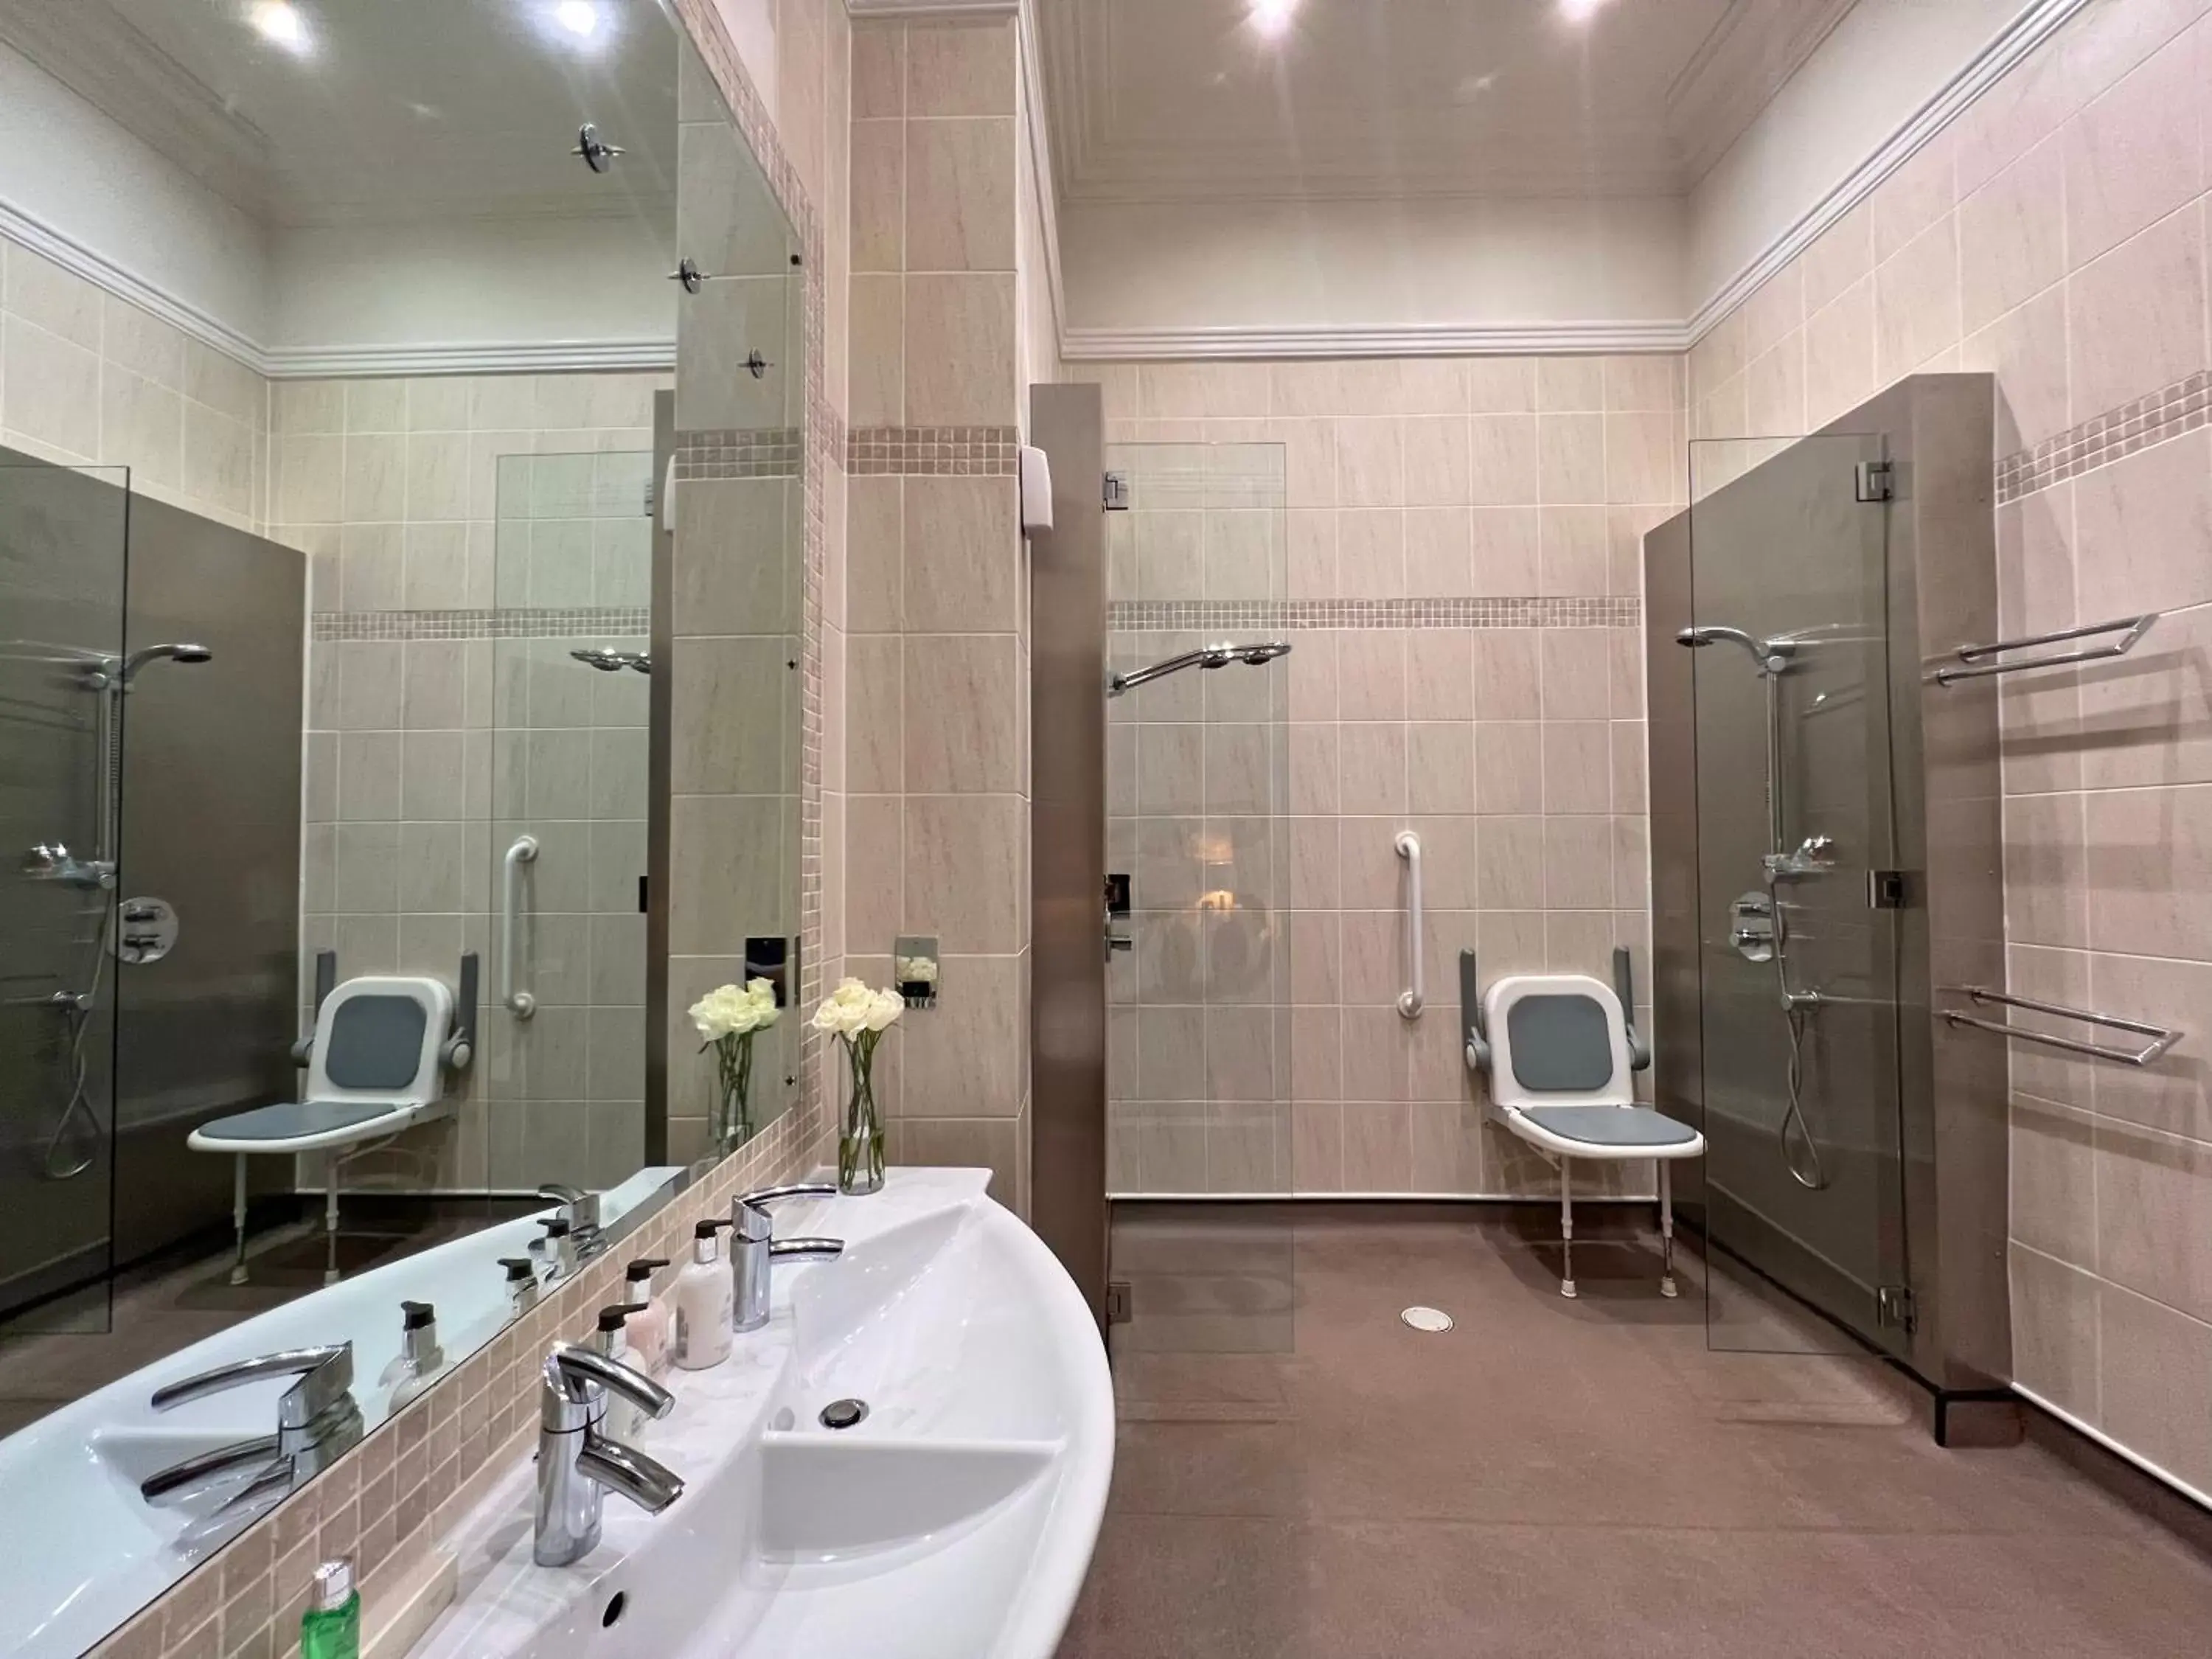 Bathroom in Morgans Hotel